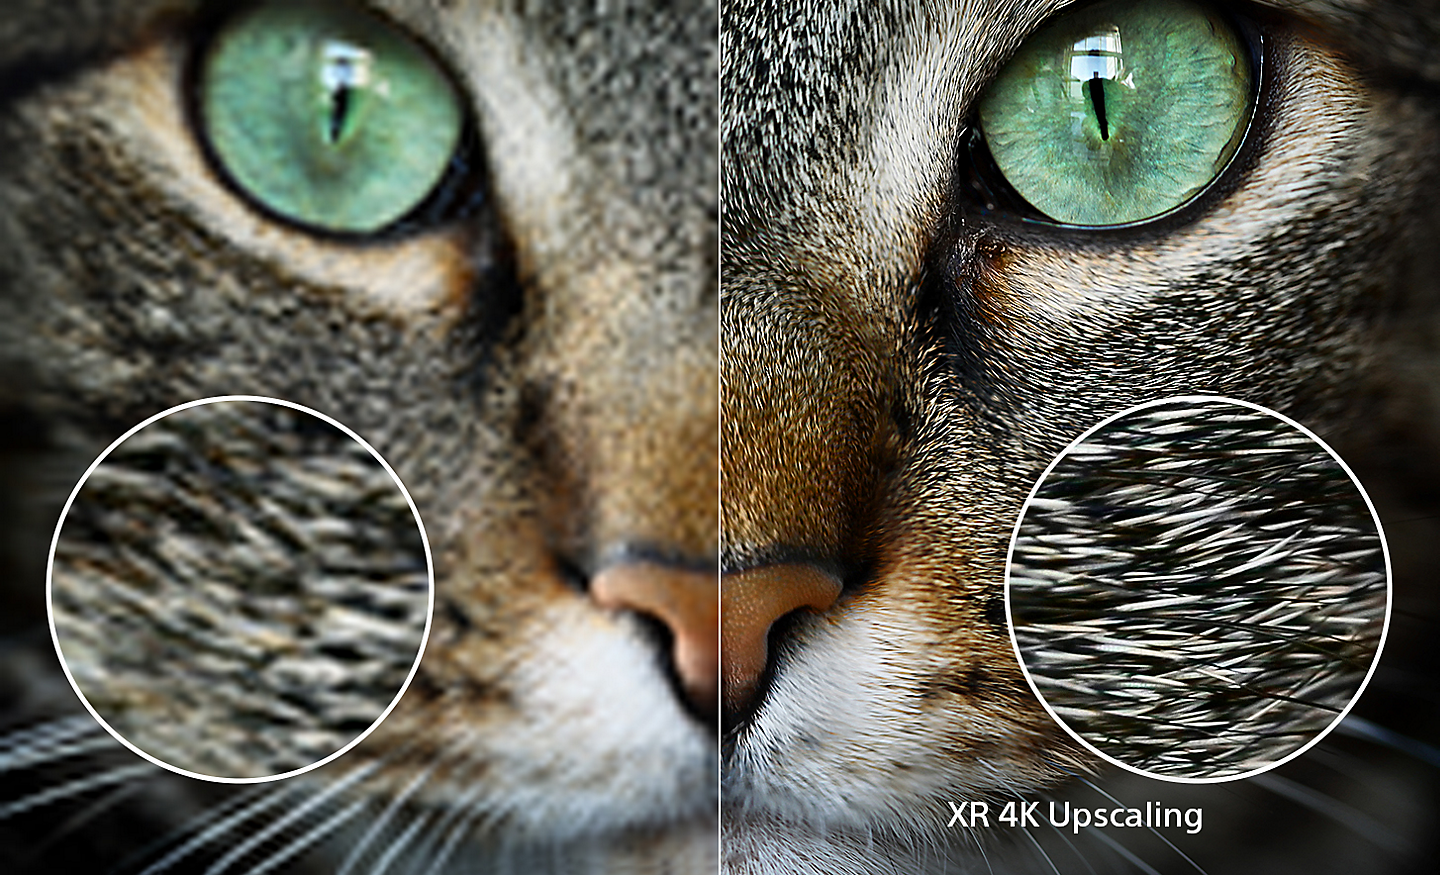 Écran partagé avec la tête d'un chat, le côté droit montrant des détails supplémentaires après utilisation de la conversion ascendante 4K XR